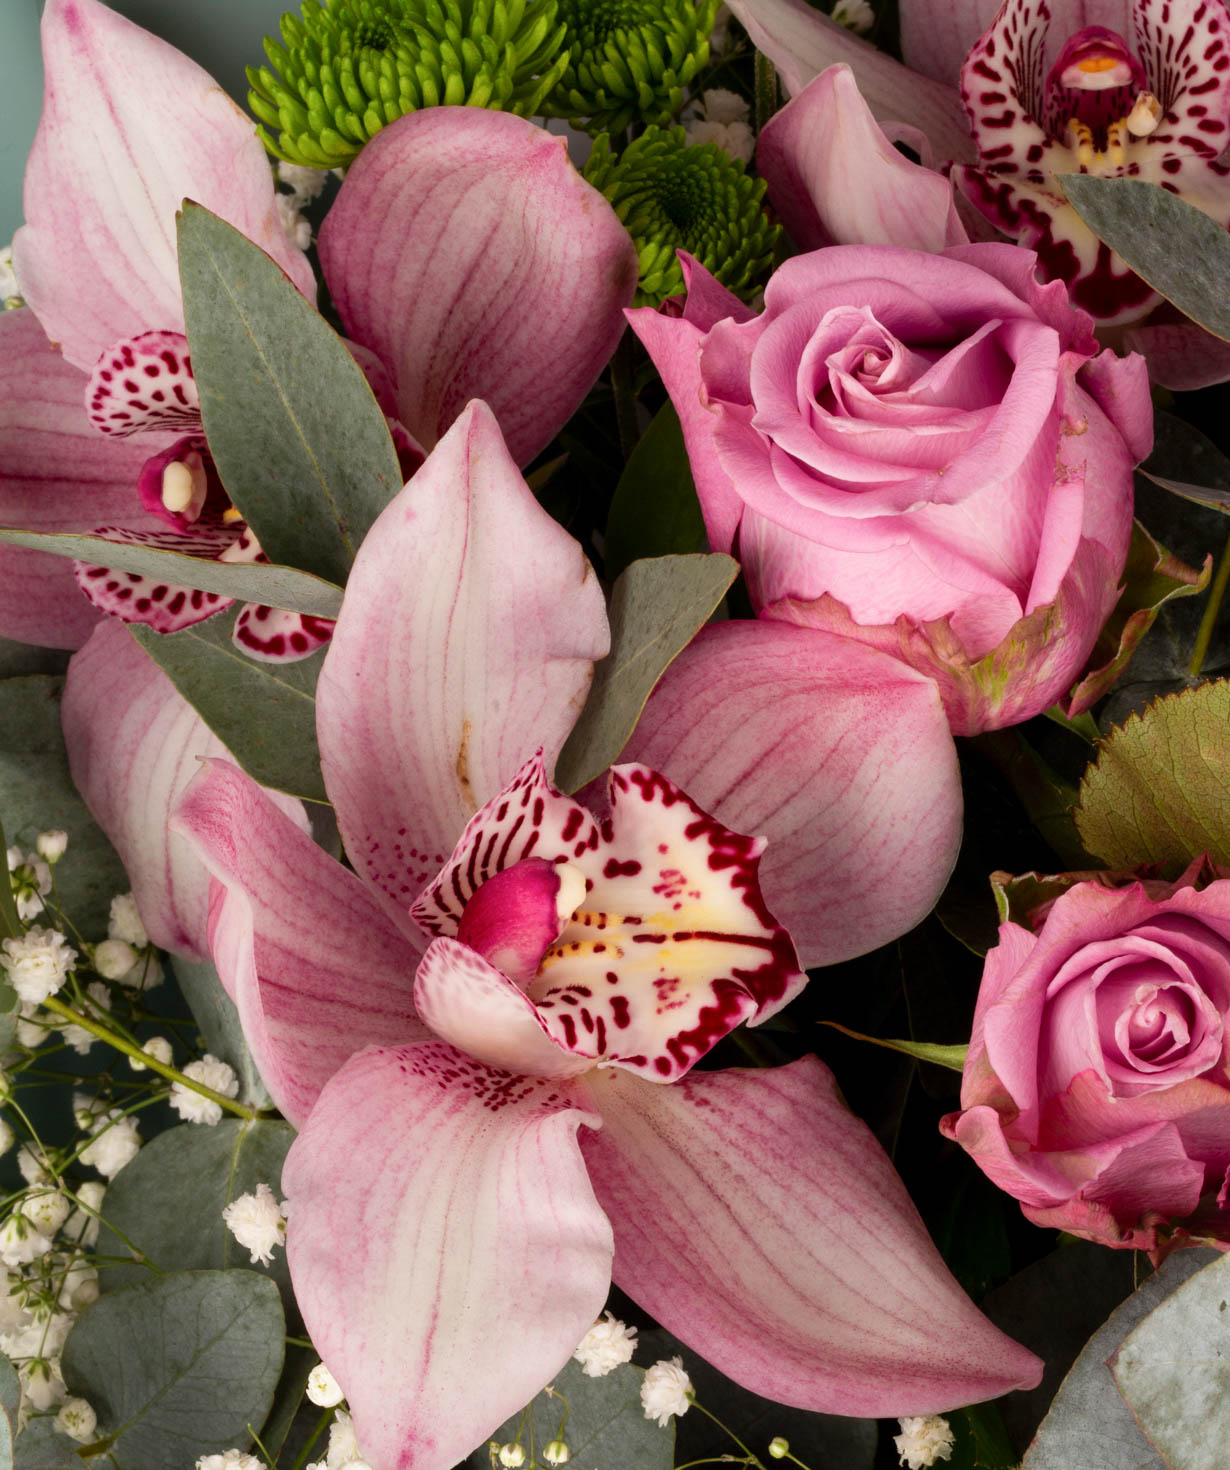 Ծաղկեփունջ «Լիտիա» վարդերով, քրիզանթեմներով և ալտրոմերիաներով